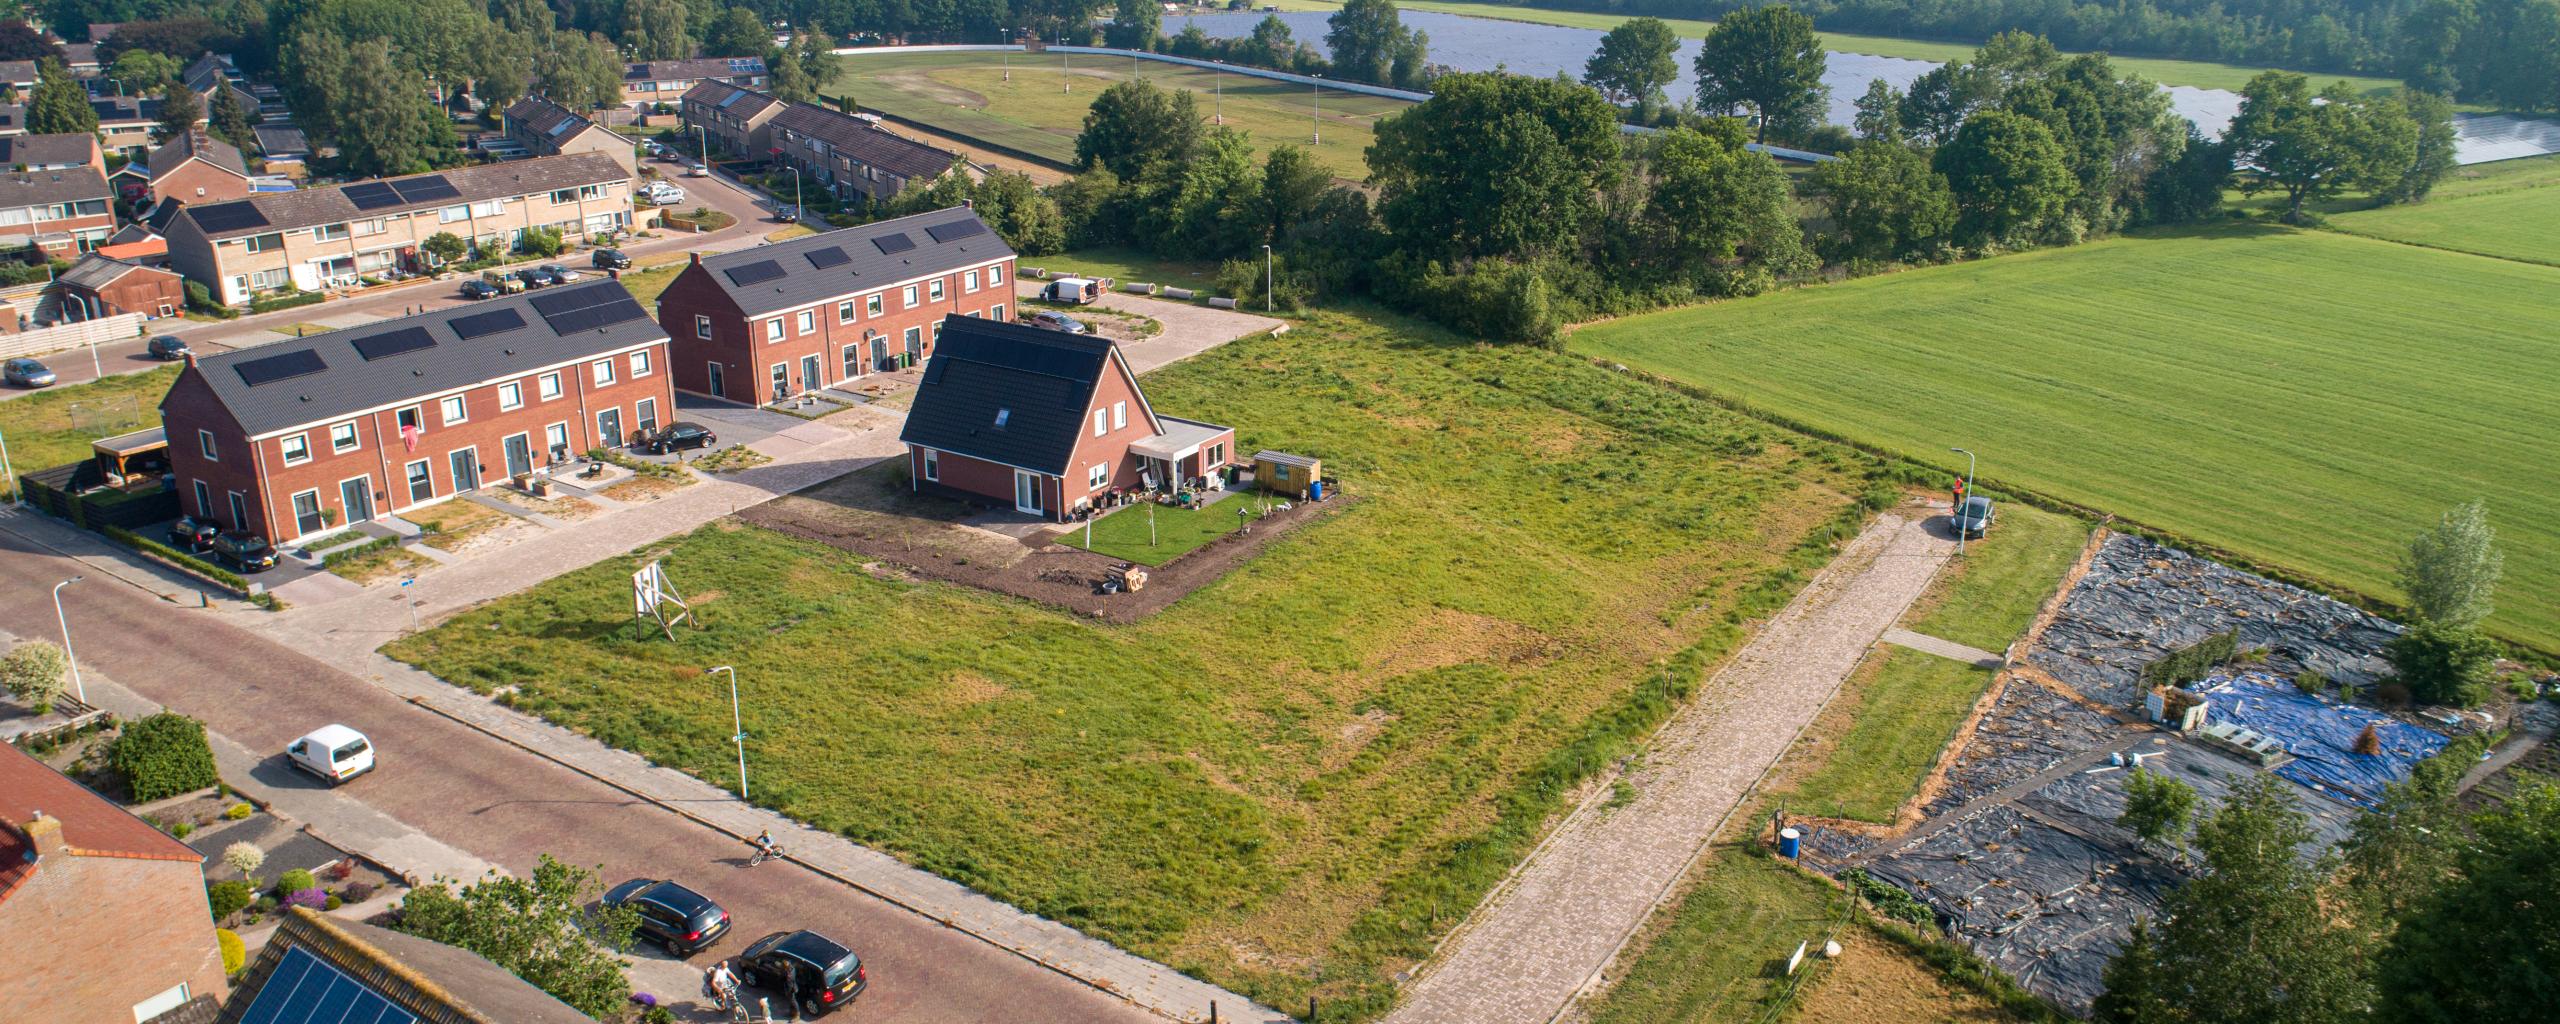 Bouwkavels Renbaanschoollocatie in Noordwolde